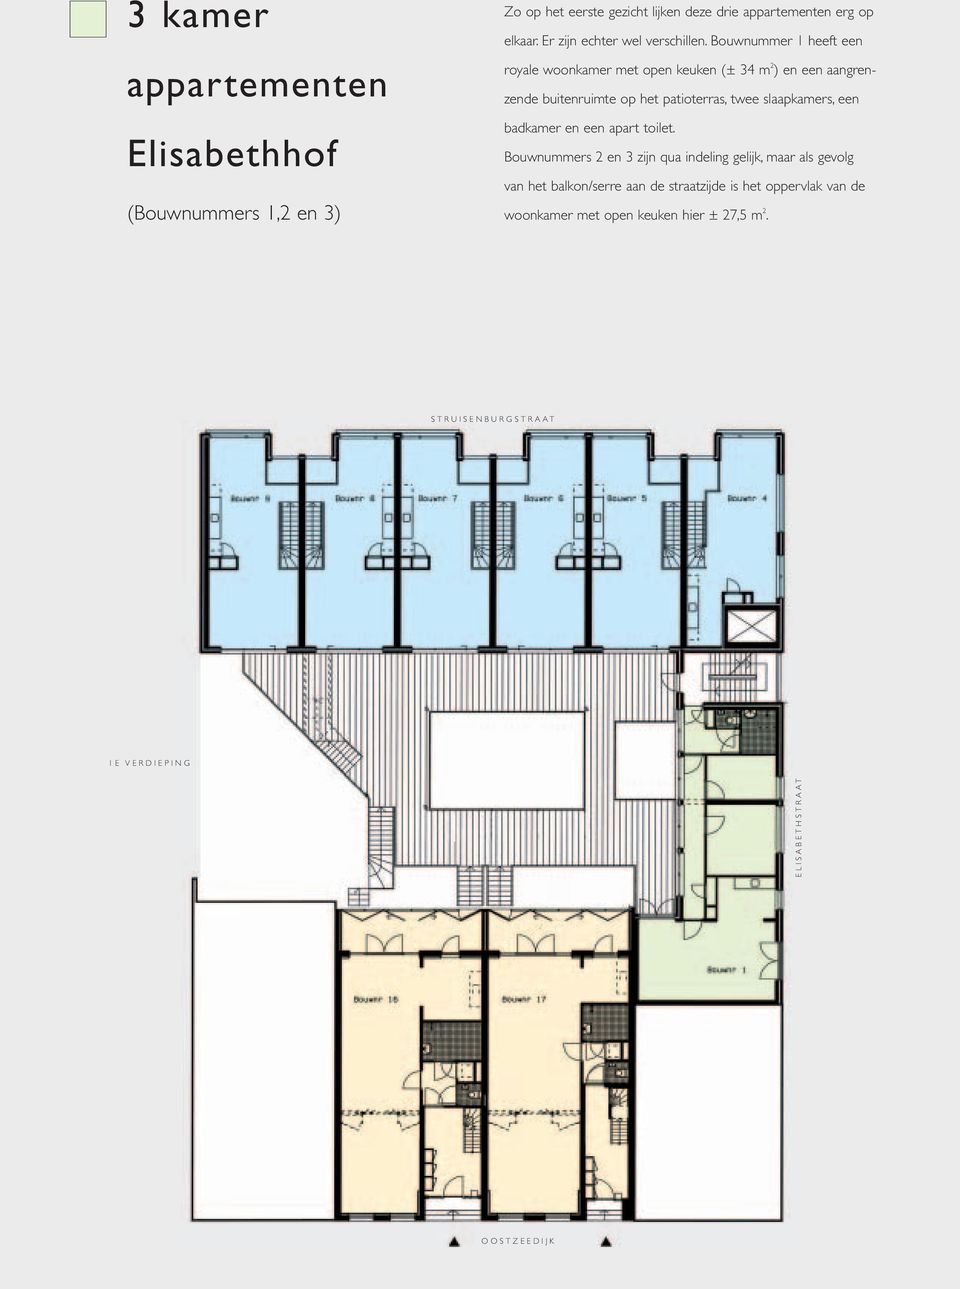 Bouwnummer 1 heeft een royale woonkamer met open keuken (± 34 m 2 ) en een aangrenzende buitenruimte op het patioterras, twee slaapkamers,